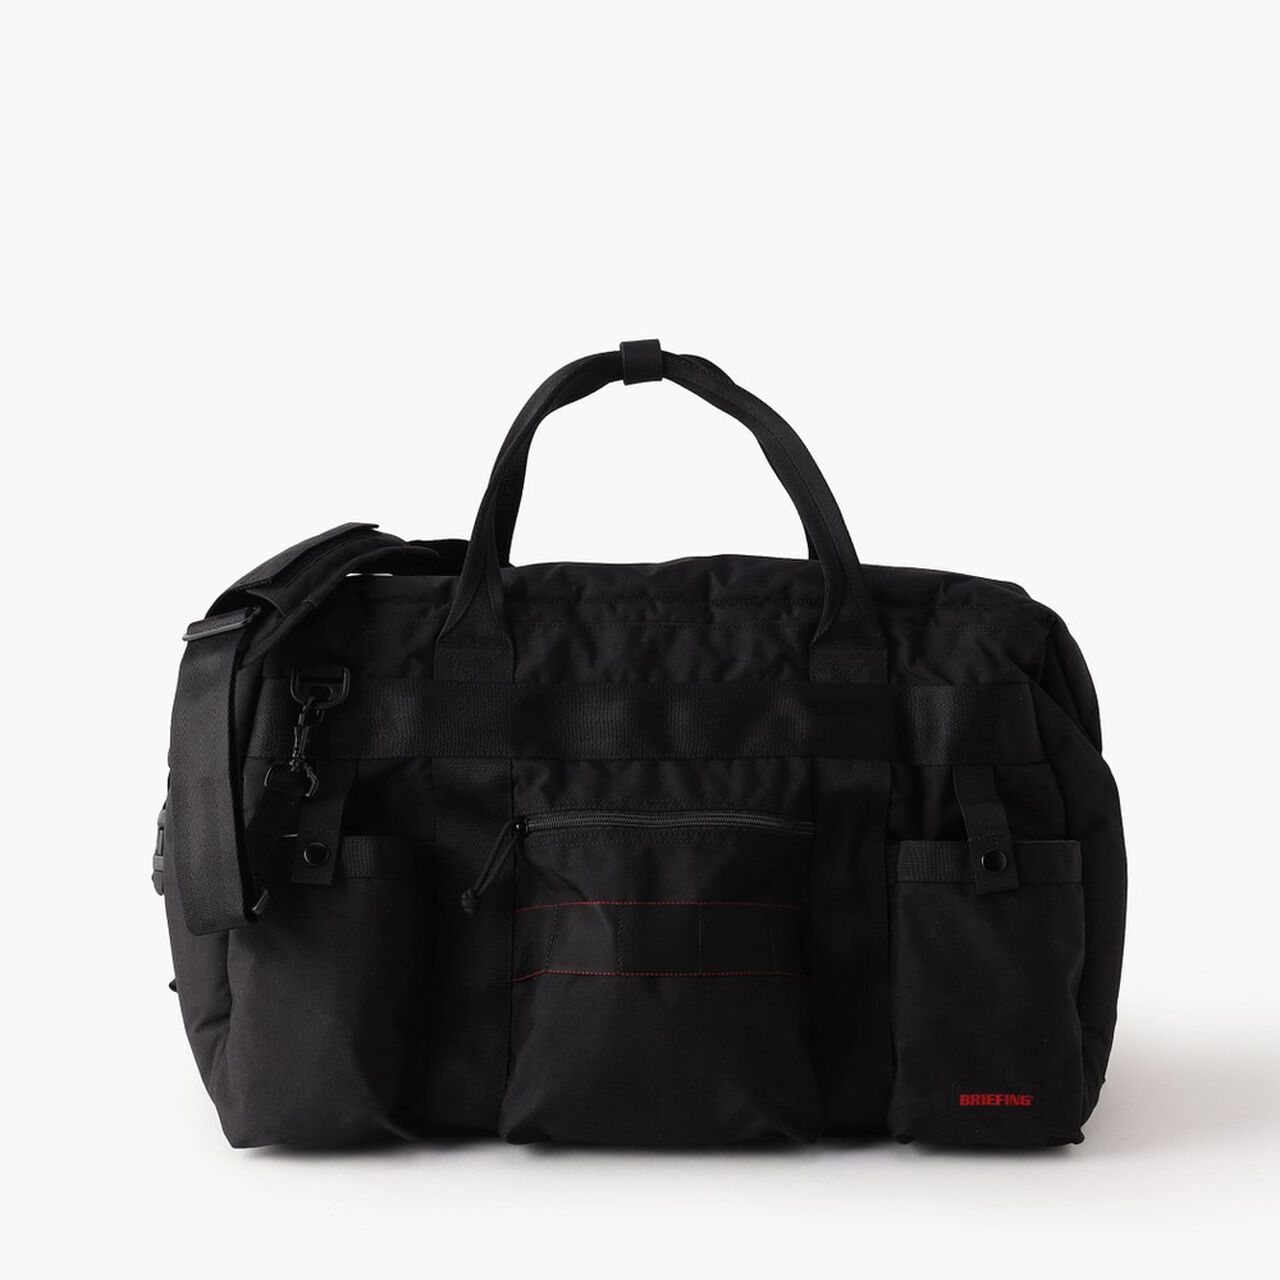 COOLER BAG 34,Black, large image number 0